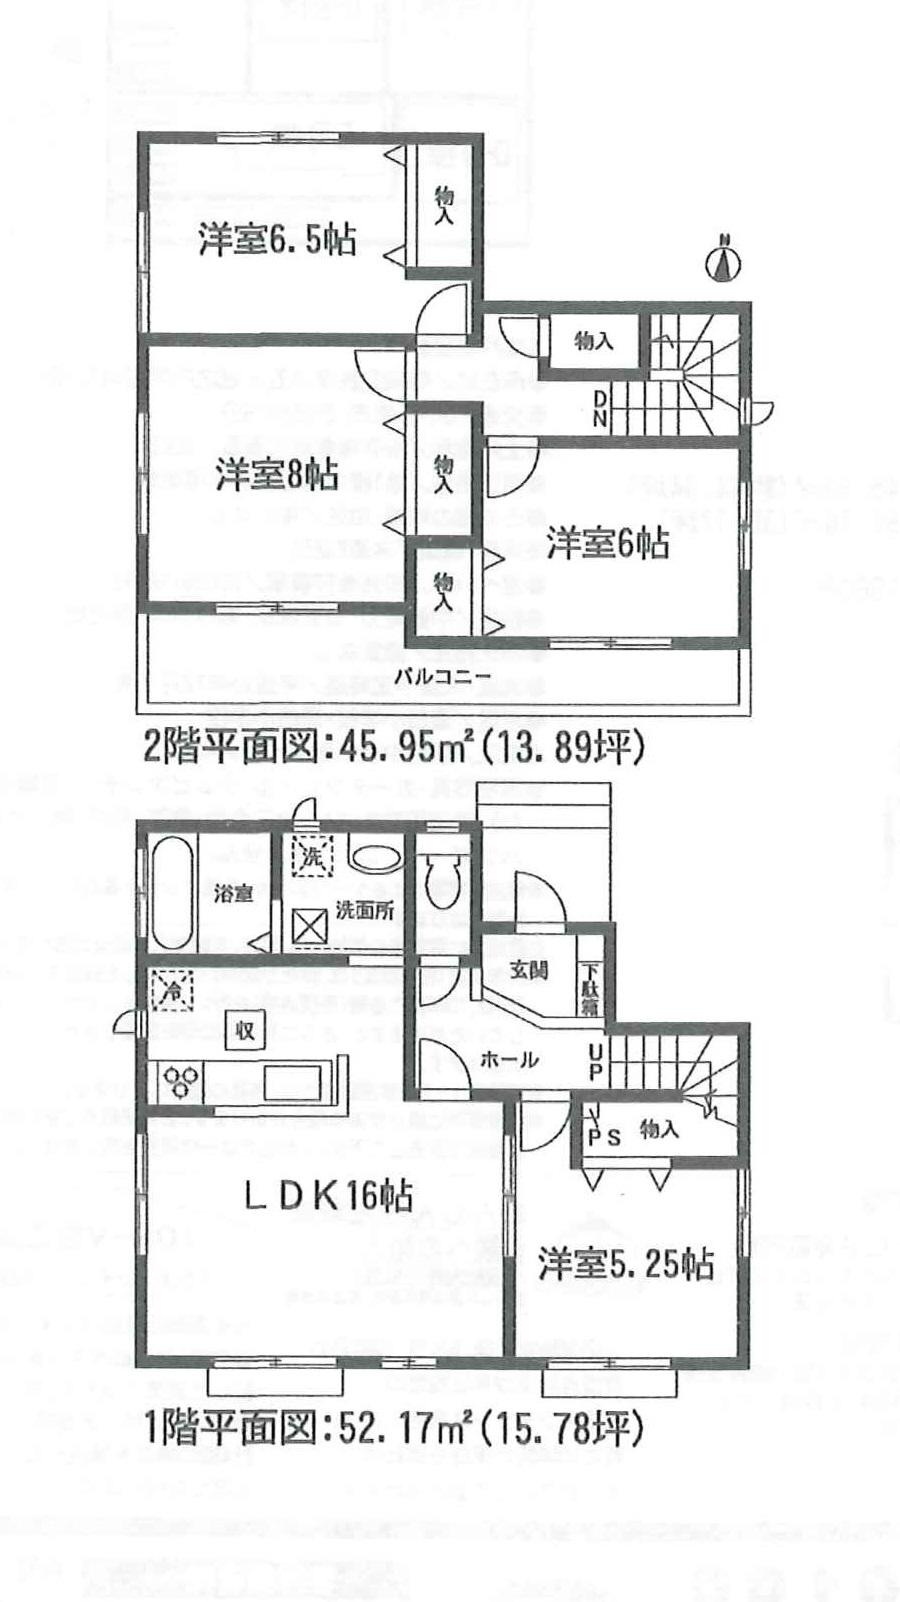 Floor plan. (A Building), Price 23.8 million yen, 4LDK, Land area 145.2 sq m , Building area 98.12 sq m